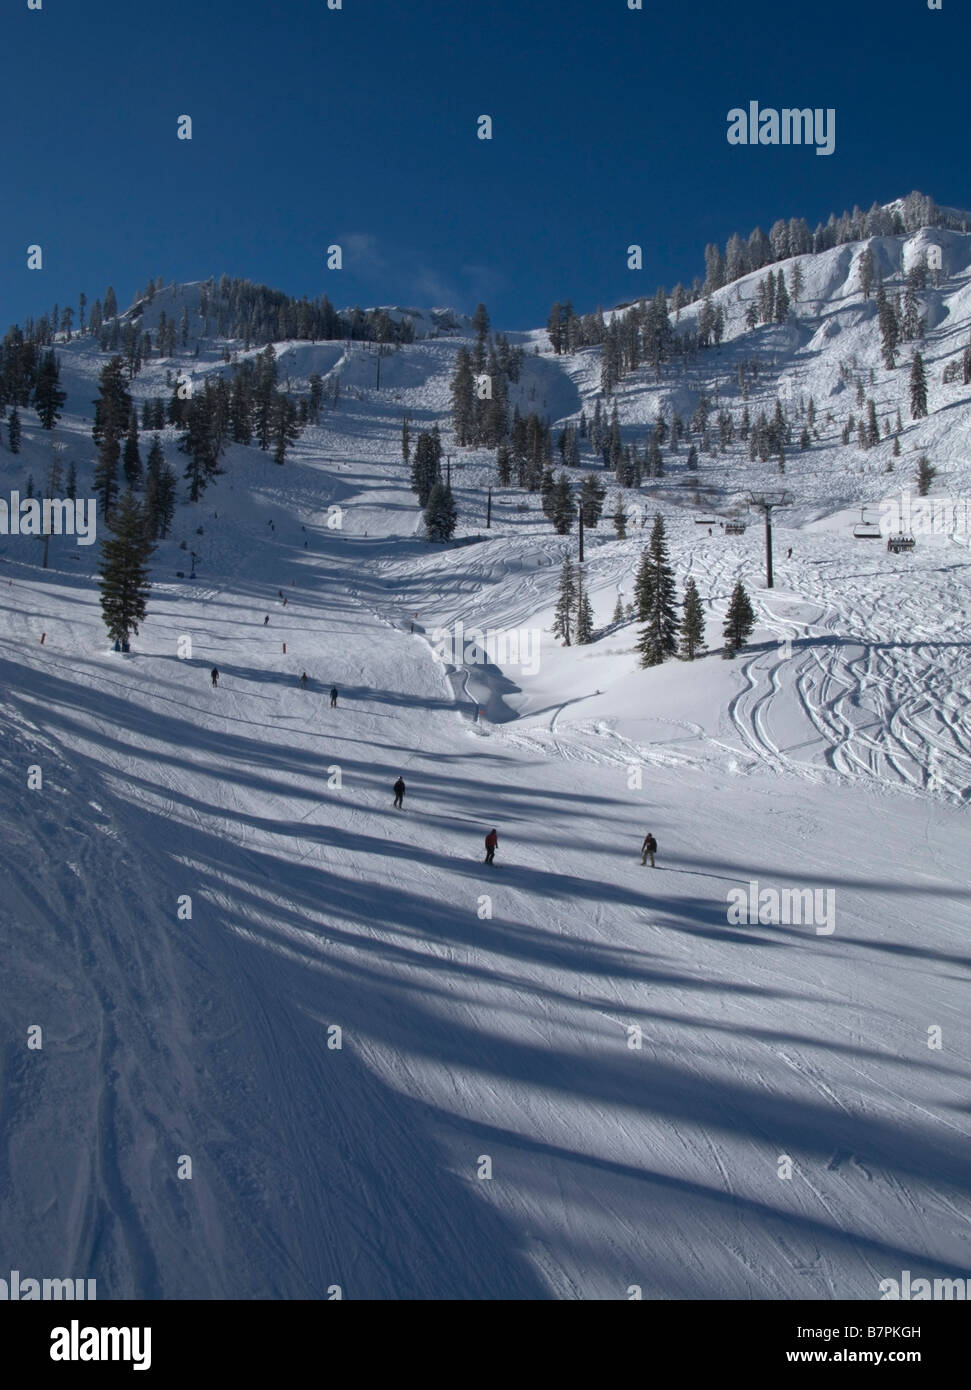 Skifahrer auf 'Nick' Flucht am unteren Rand der Gipfel sechs Sesselbahn auf Almwiesen Skigebiet über North Lake Tahoe, CA. Stockfoto